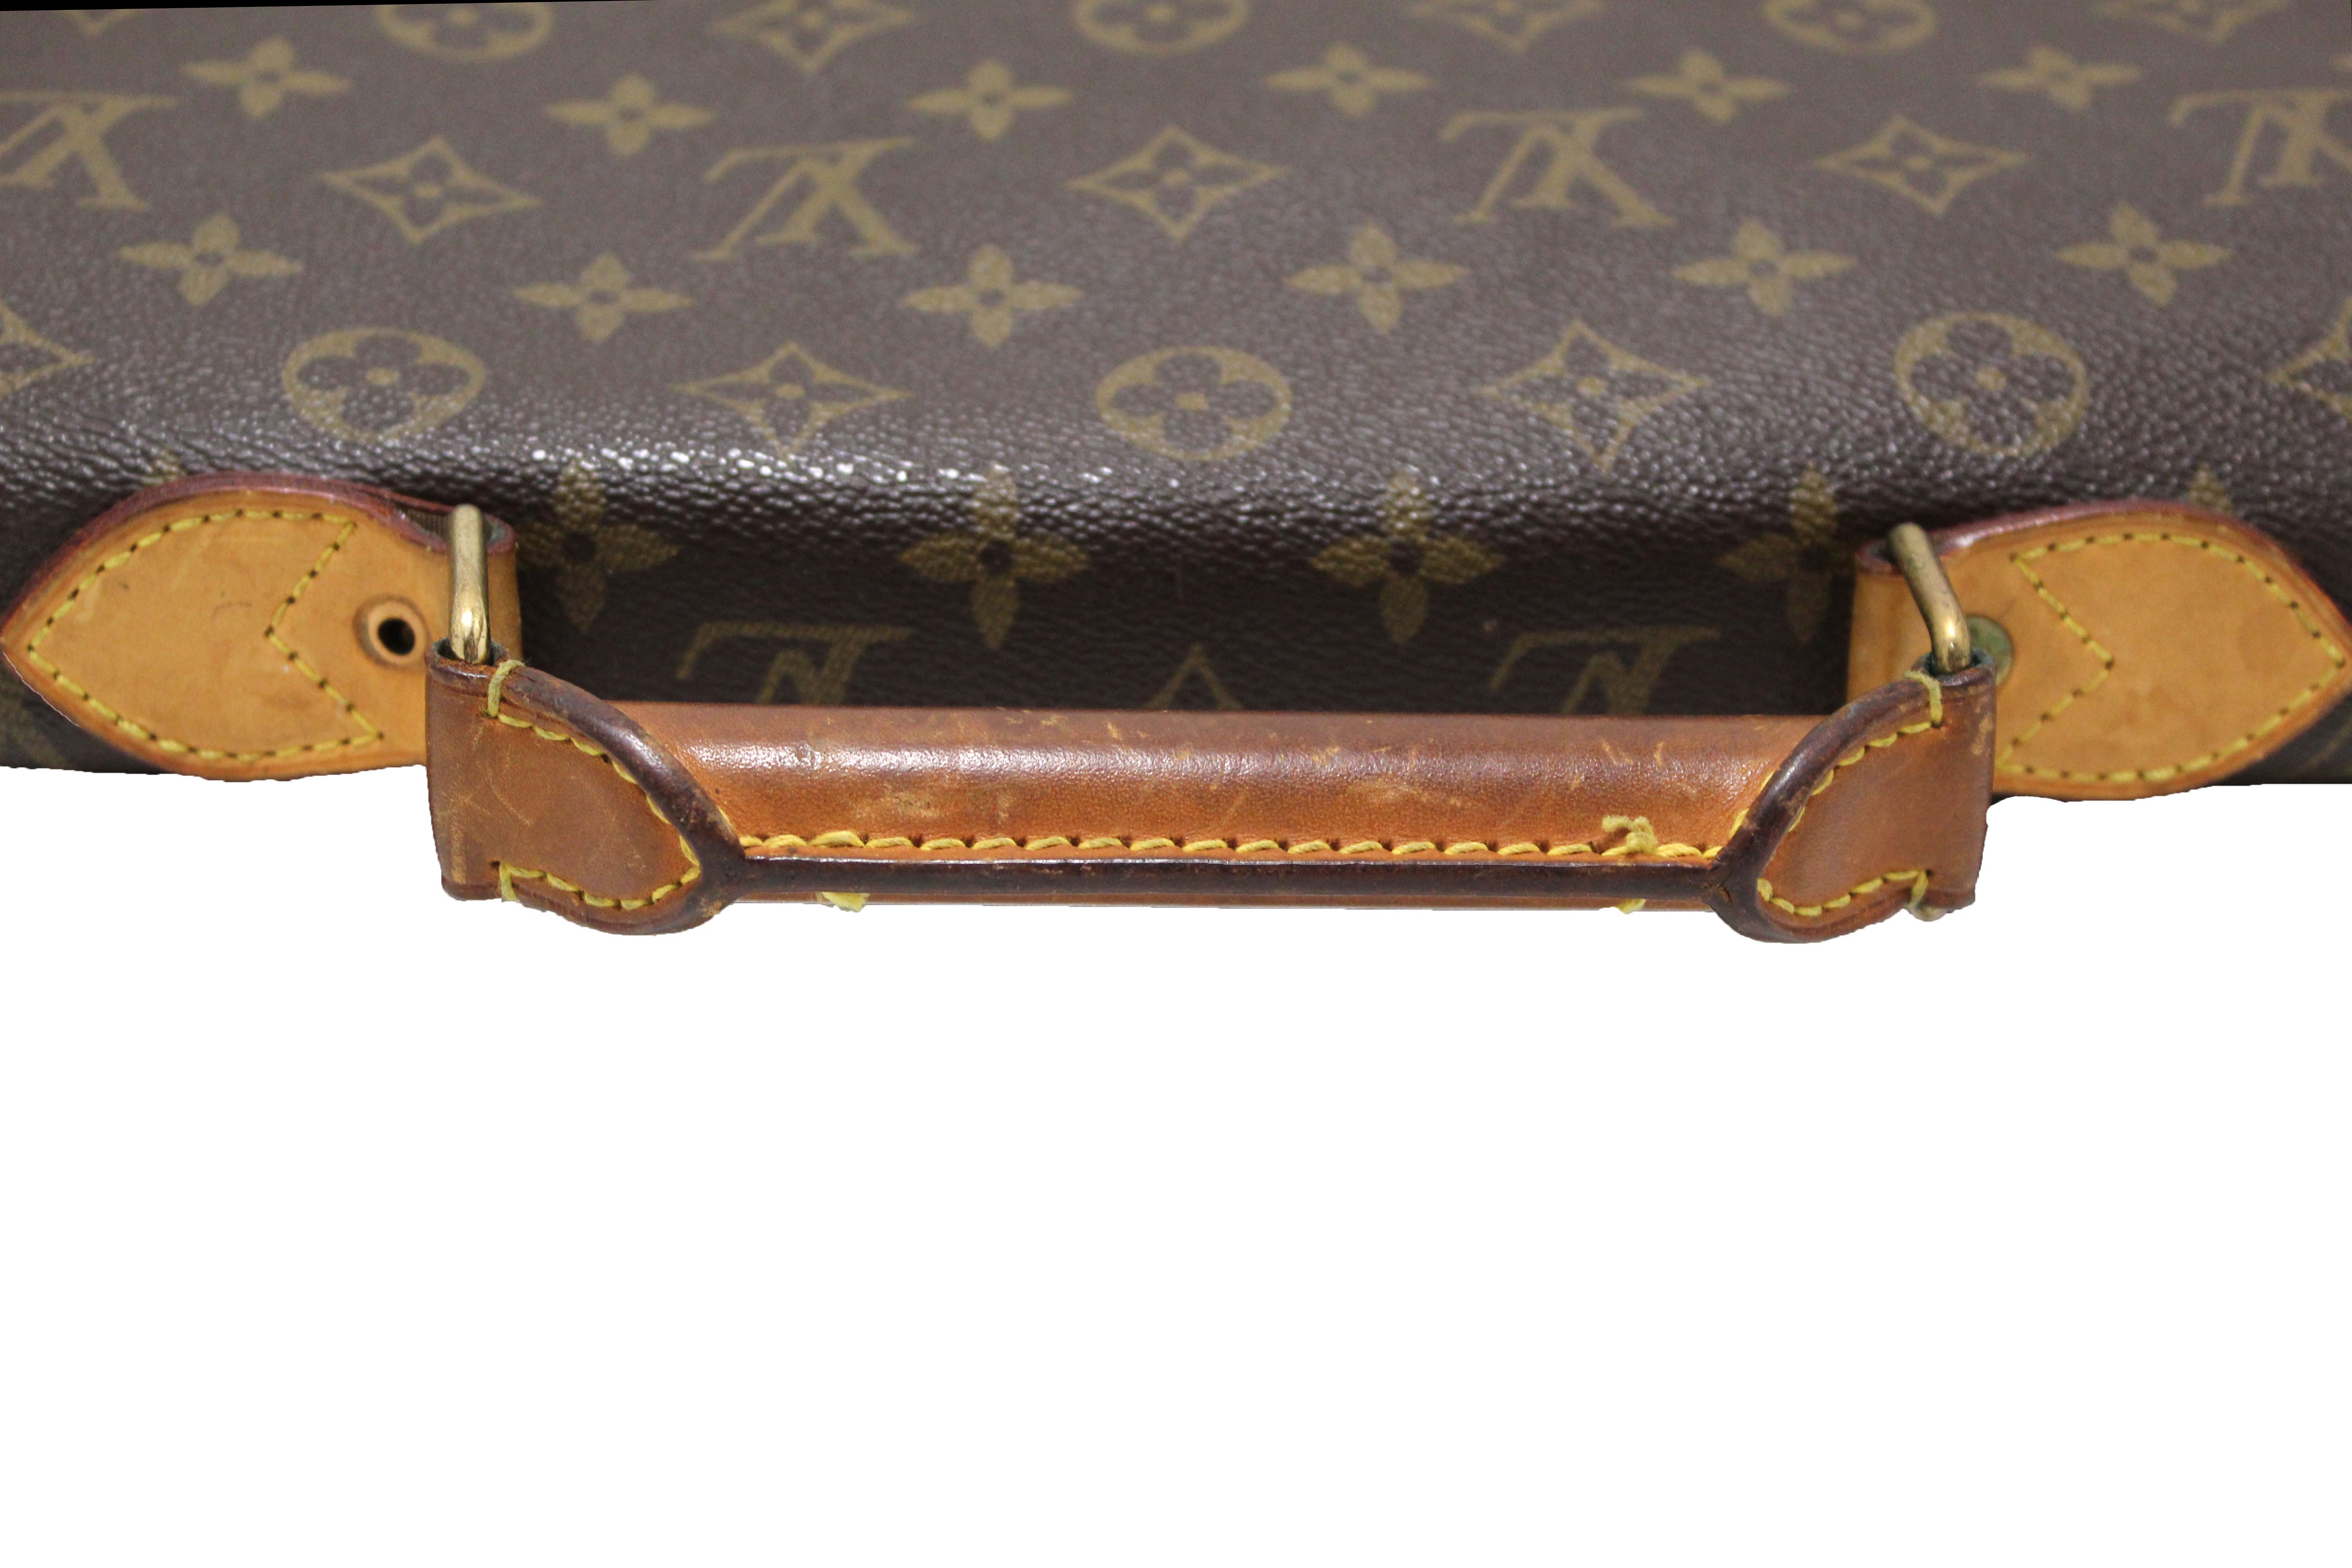 Authentic Louis Vuitton Classic Monogram Vintage Soft Briefcase